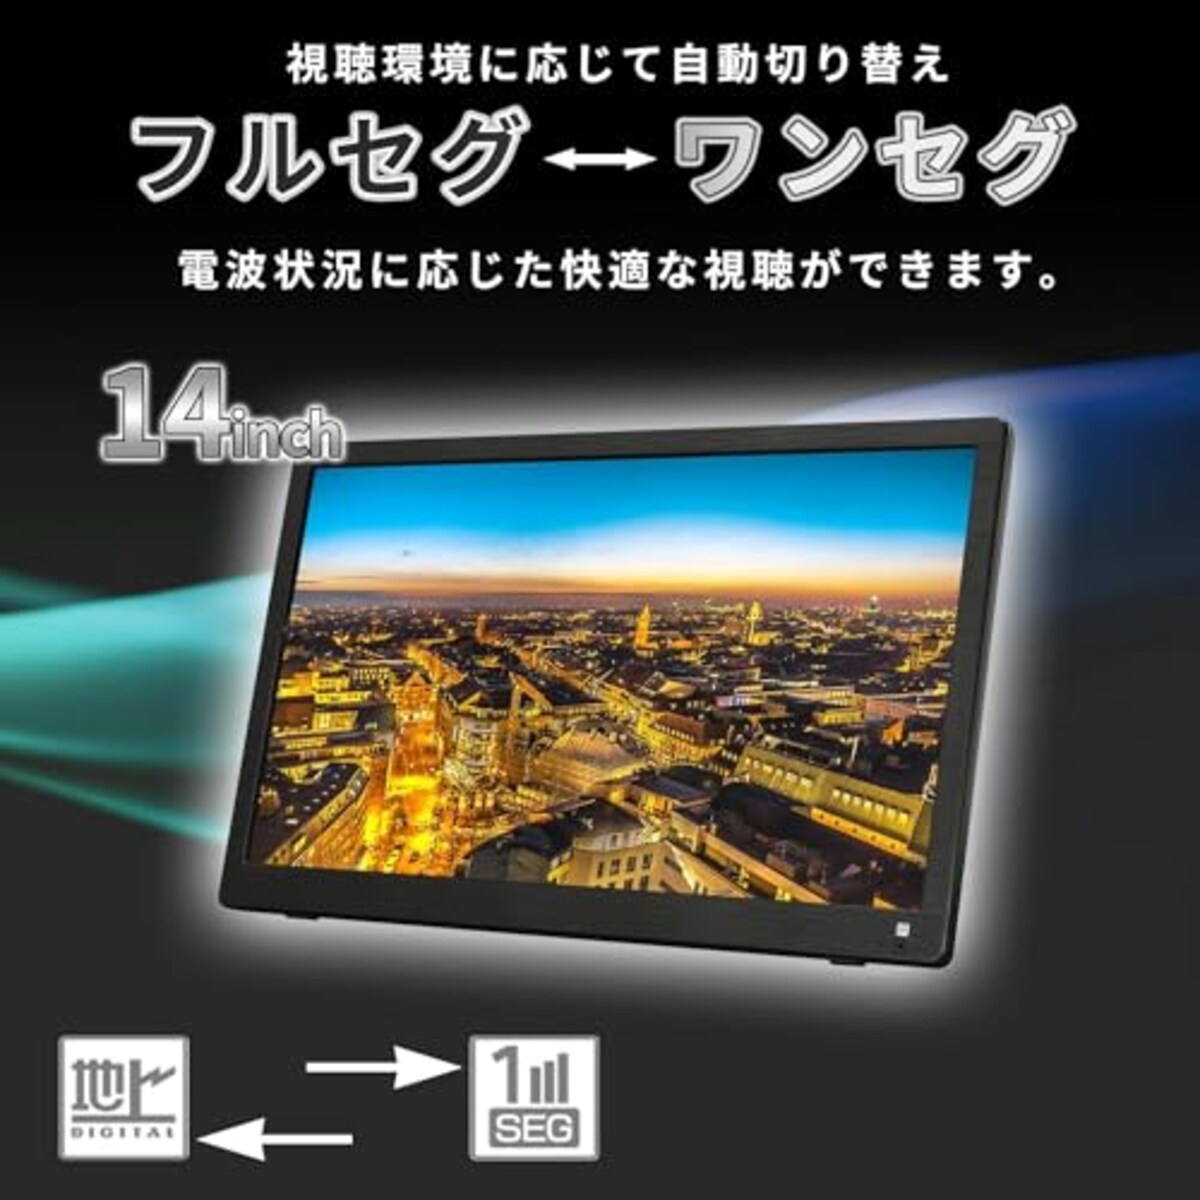  [東京Deco] 14インチ 液晶テレビ HDD録画機能搭載 地デジ HDMI入力 車載用バック付き [録画機能/HDMI搭載/3電源方式/3スタイル置き/ﾌﾙｾｸﾞﾜﾝﾜｸﾞ自動切替] フルセグ アンテナケーブル 壁掛け 地デジ ワンセグ ポータブル 型 V RCA TV 19 型 o000画像4 